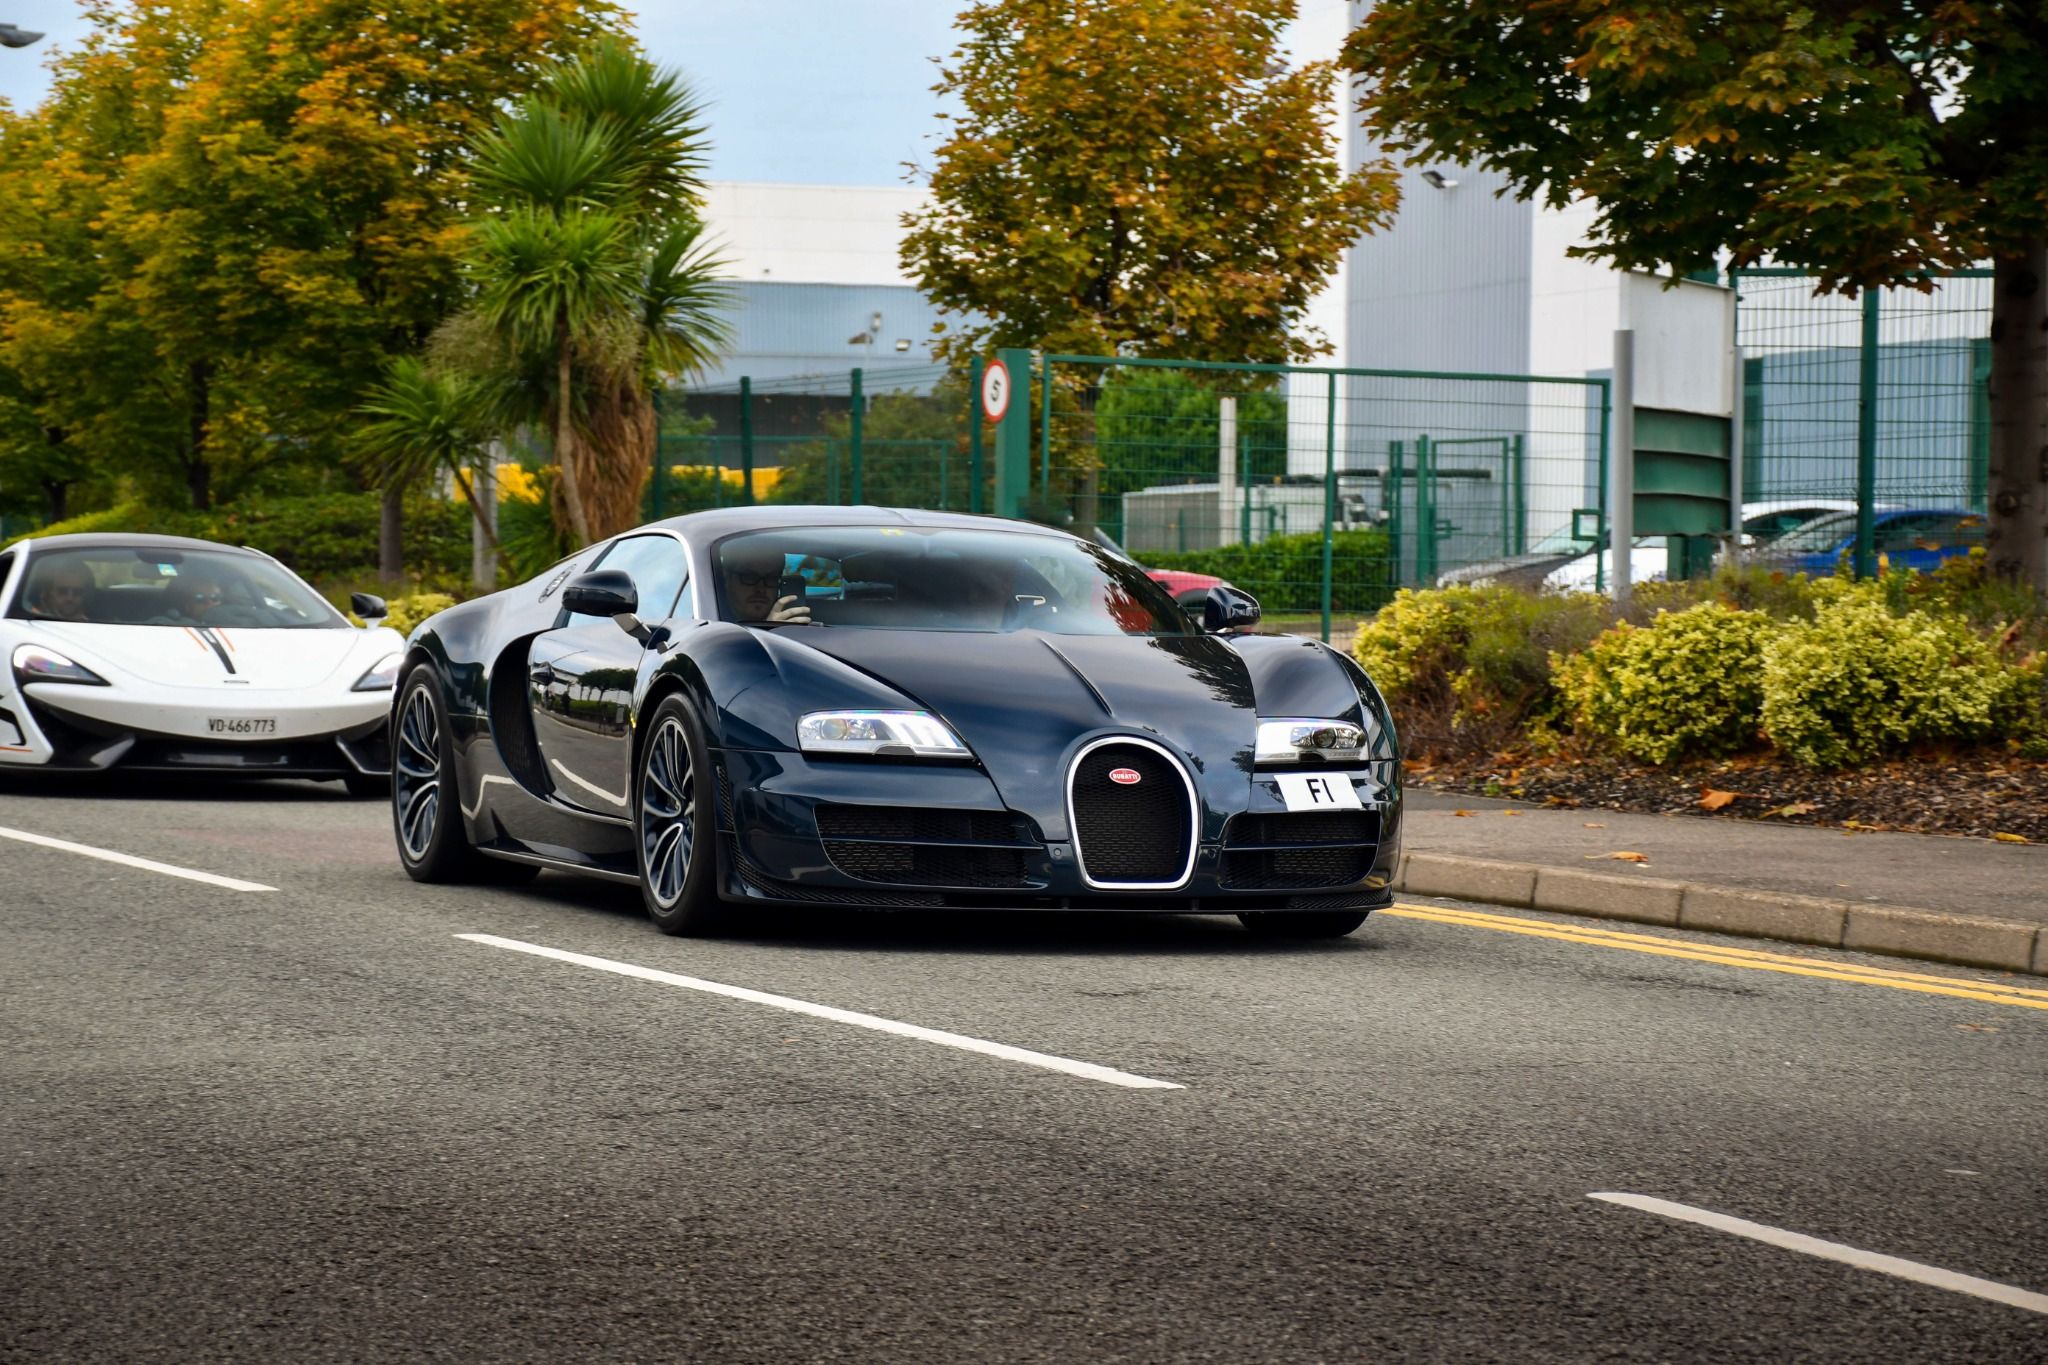 Black Bugatti driving down the road